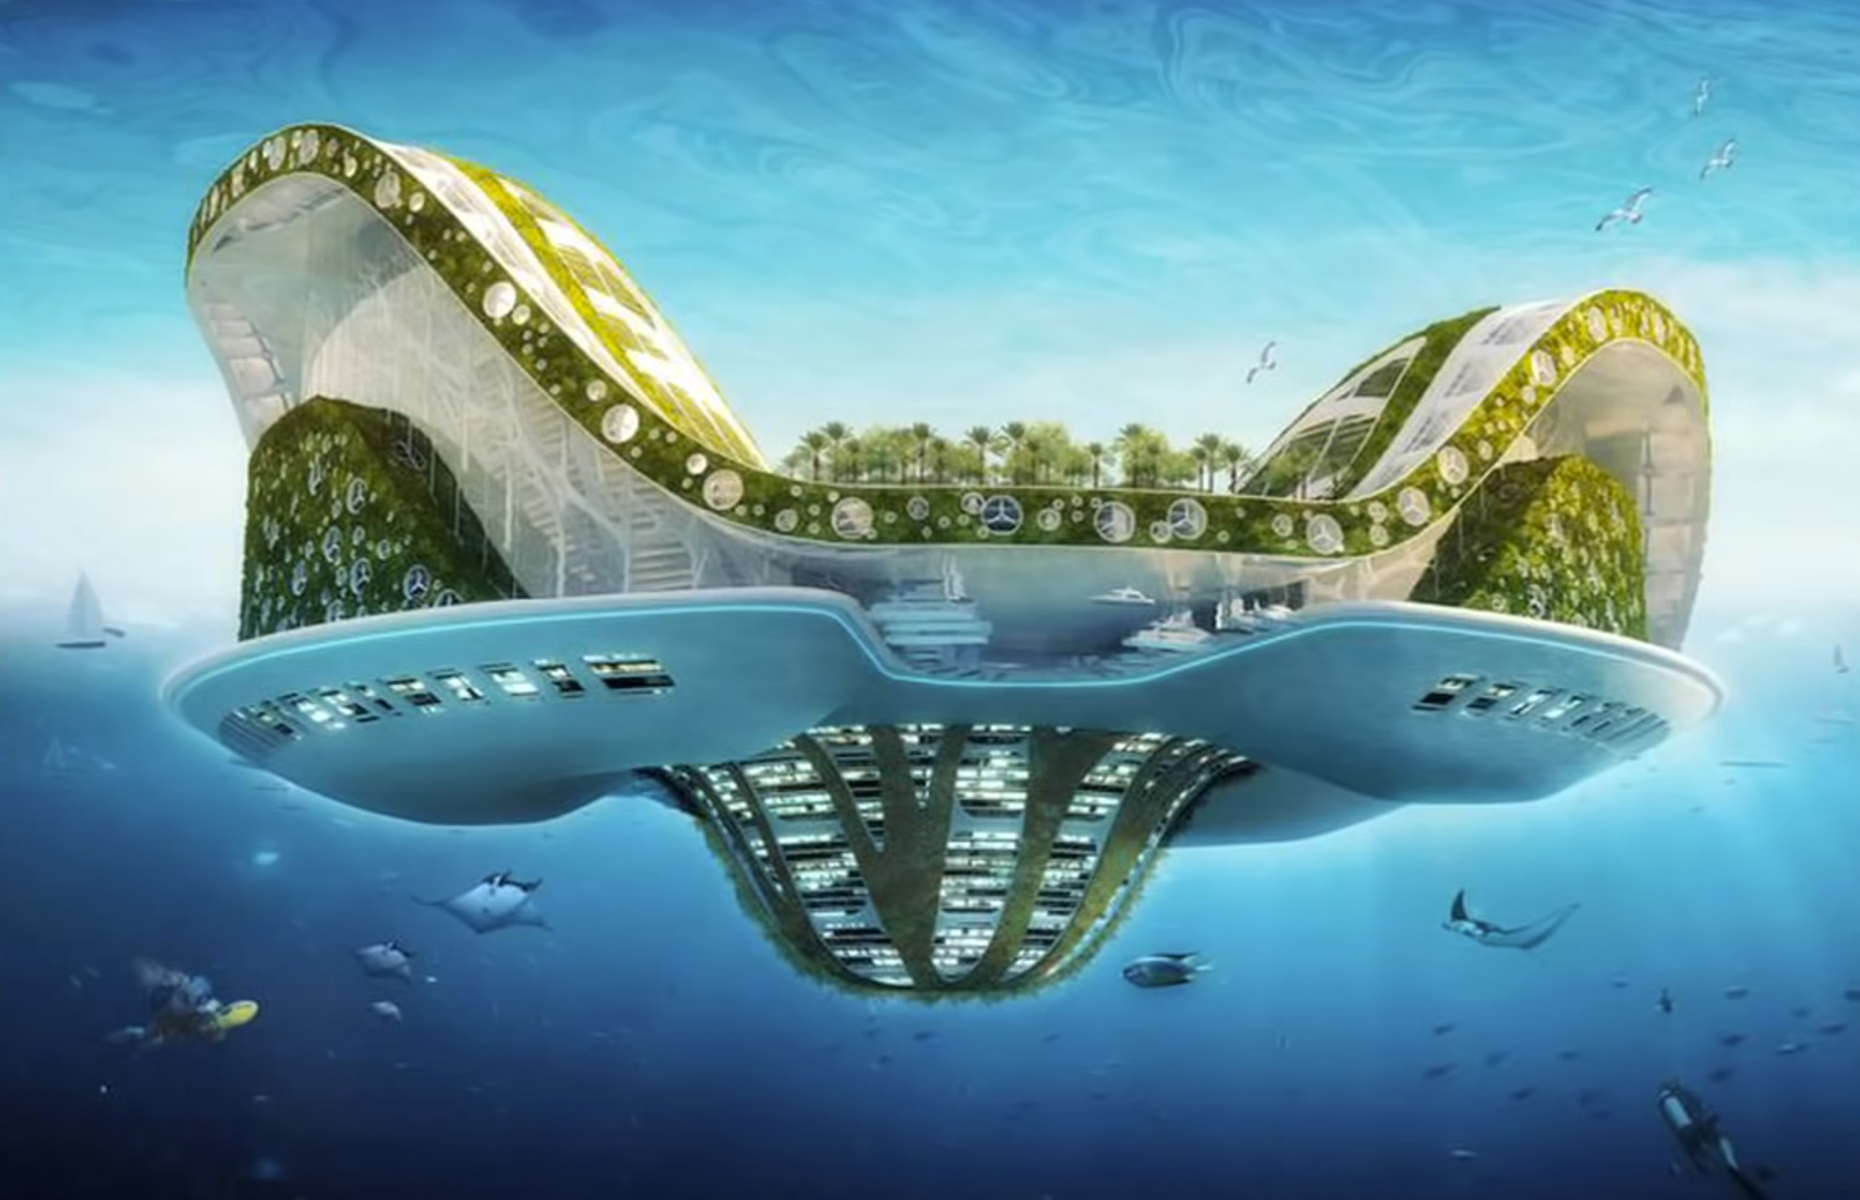 Peter Thiel's floating utopia. Image: Seasteading Institute